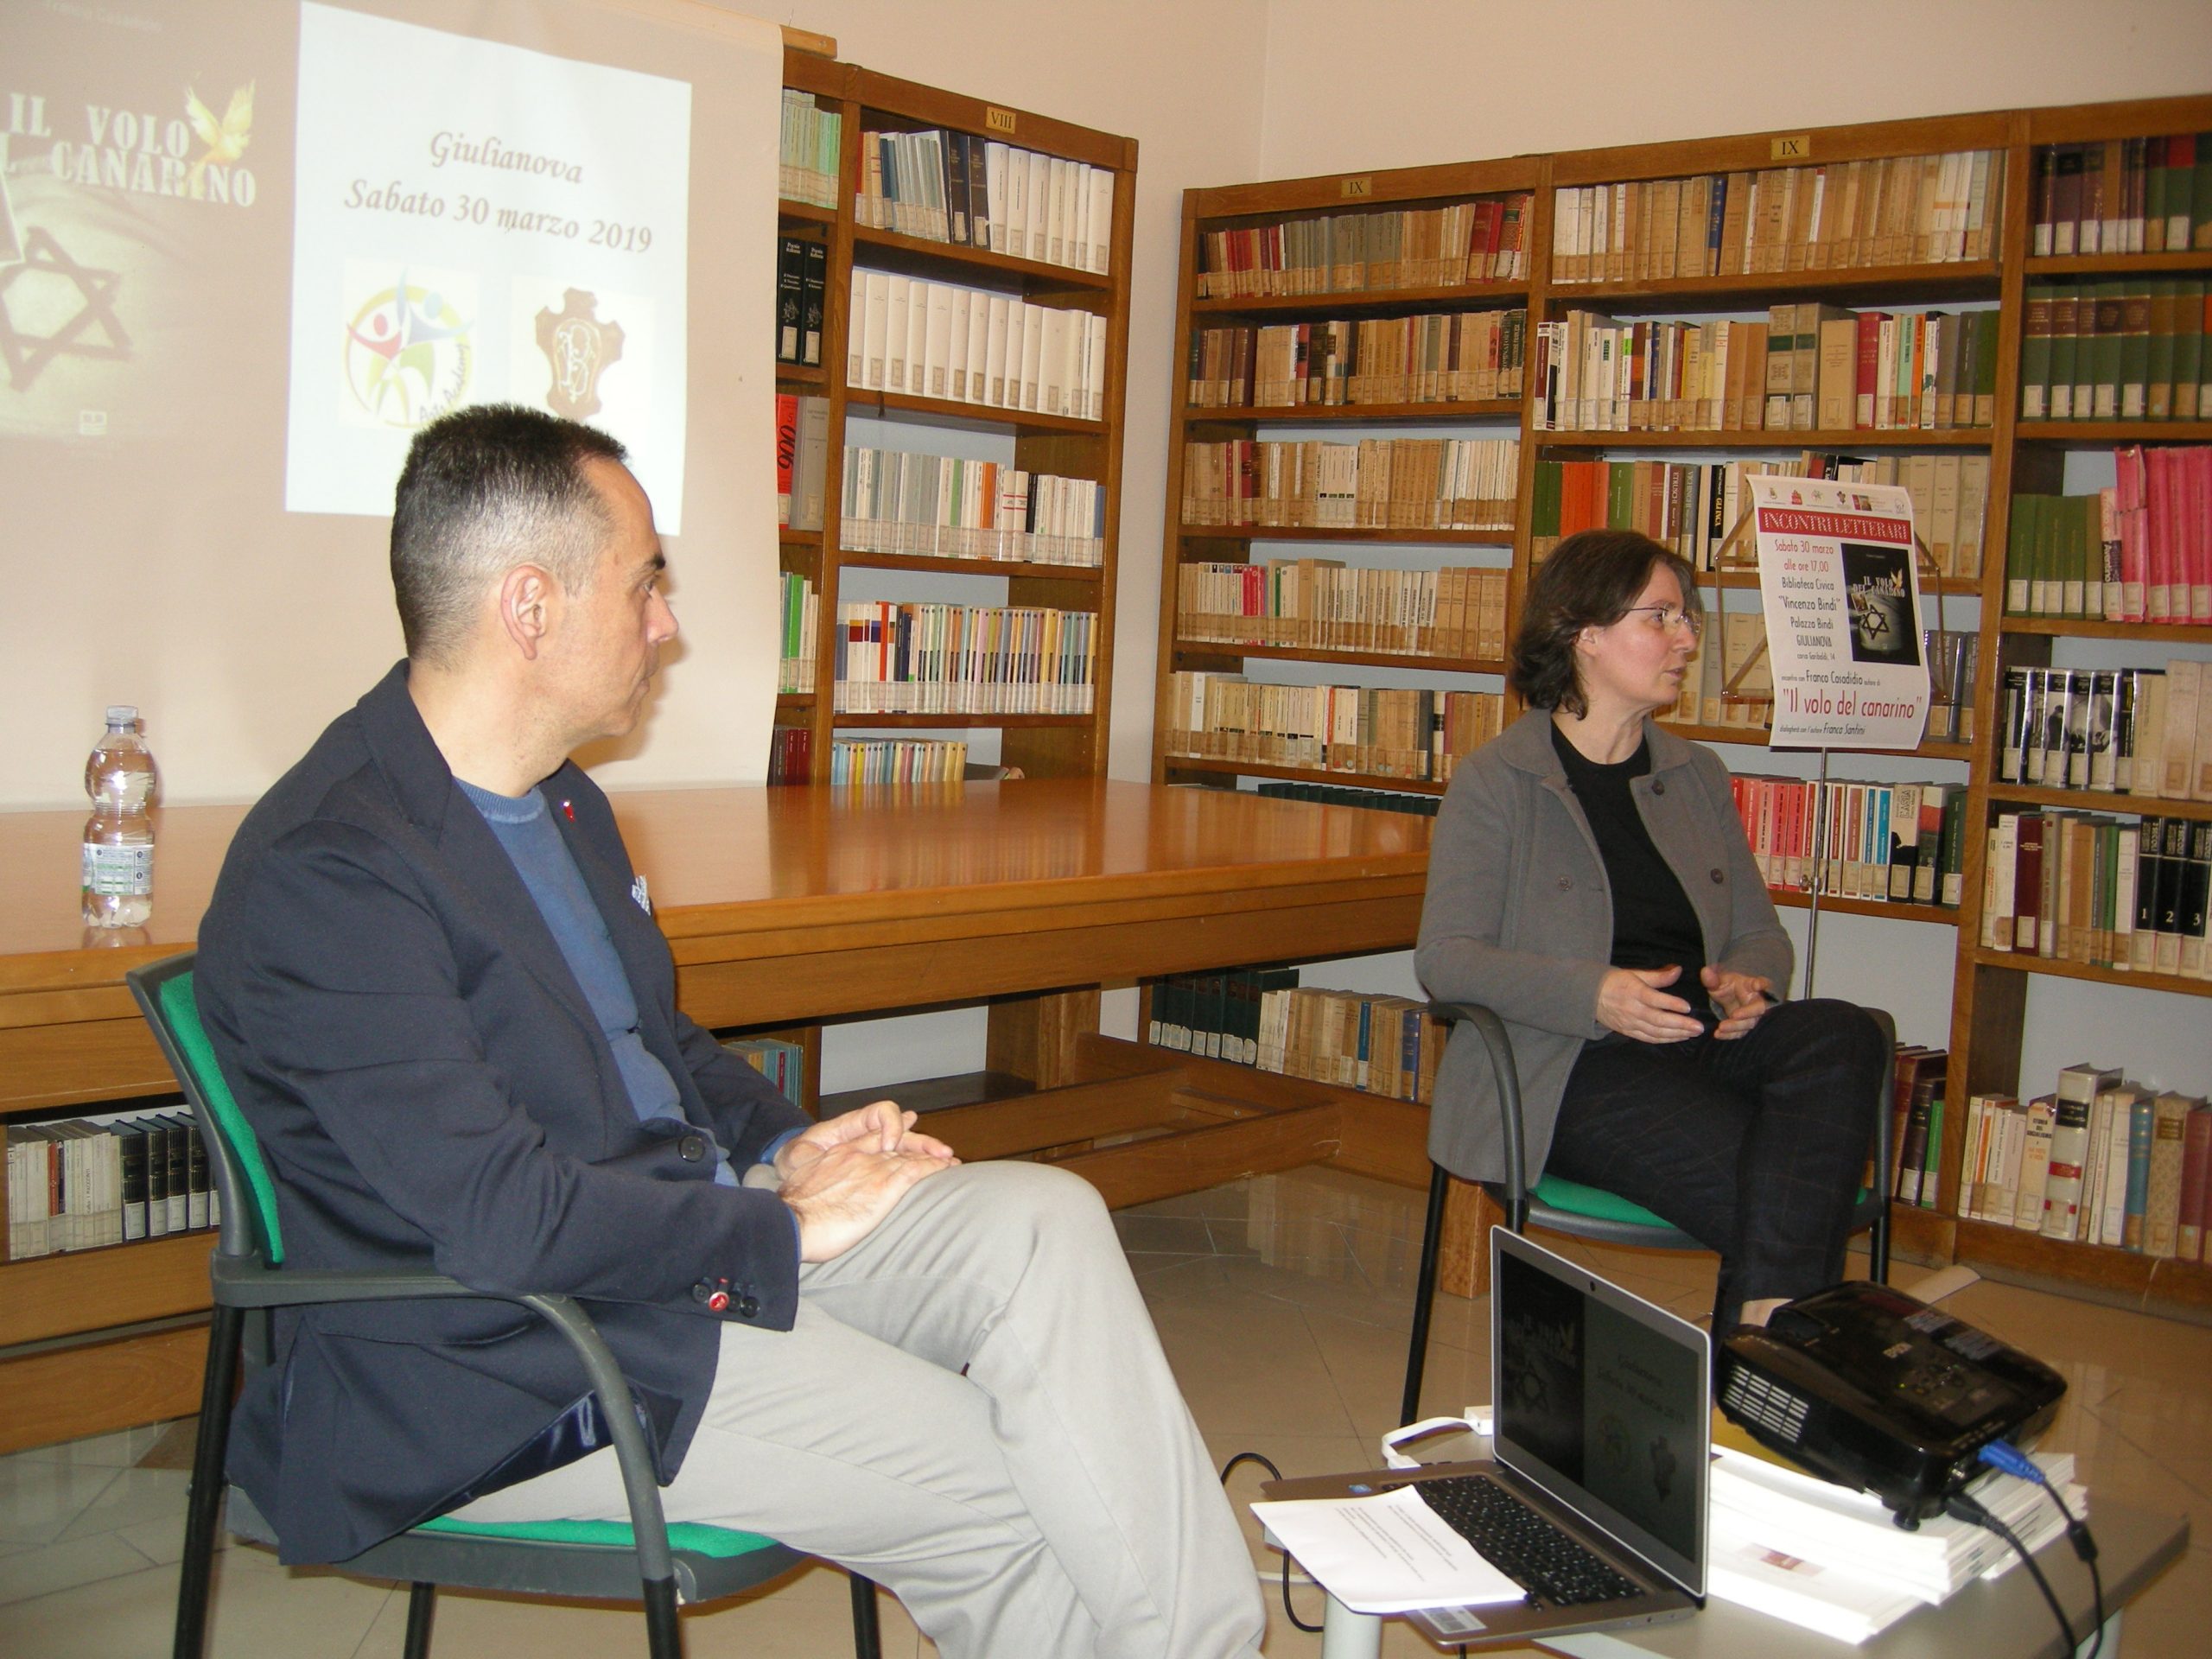 Giulianova Biblioteca “V. Bindi” in collaborazione con Arts Academy Giulianova (TE), 30 marzo 2019